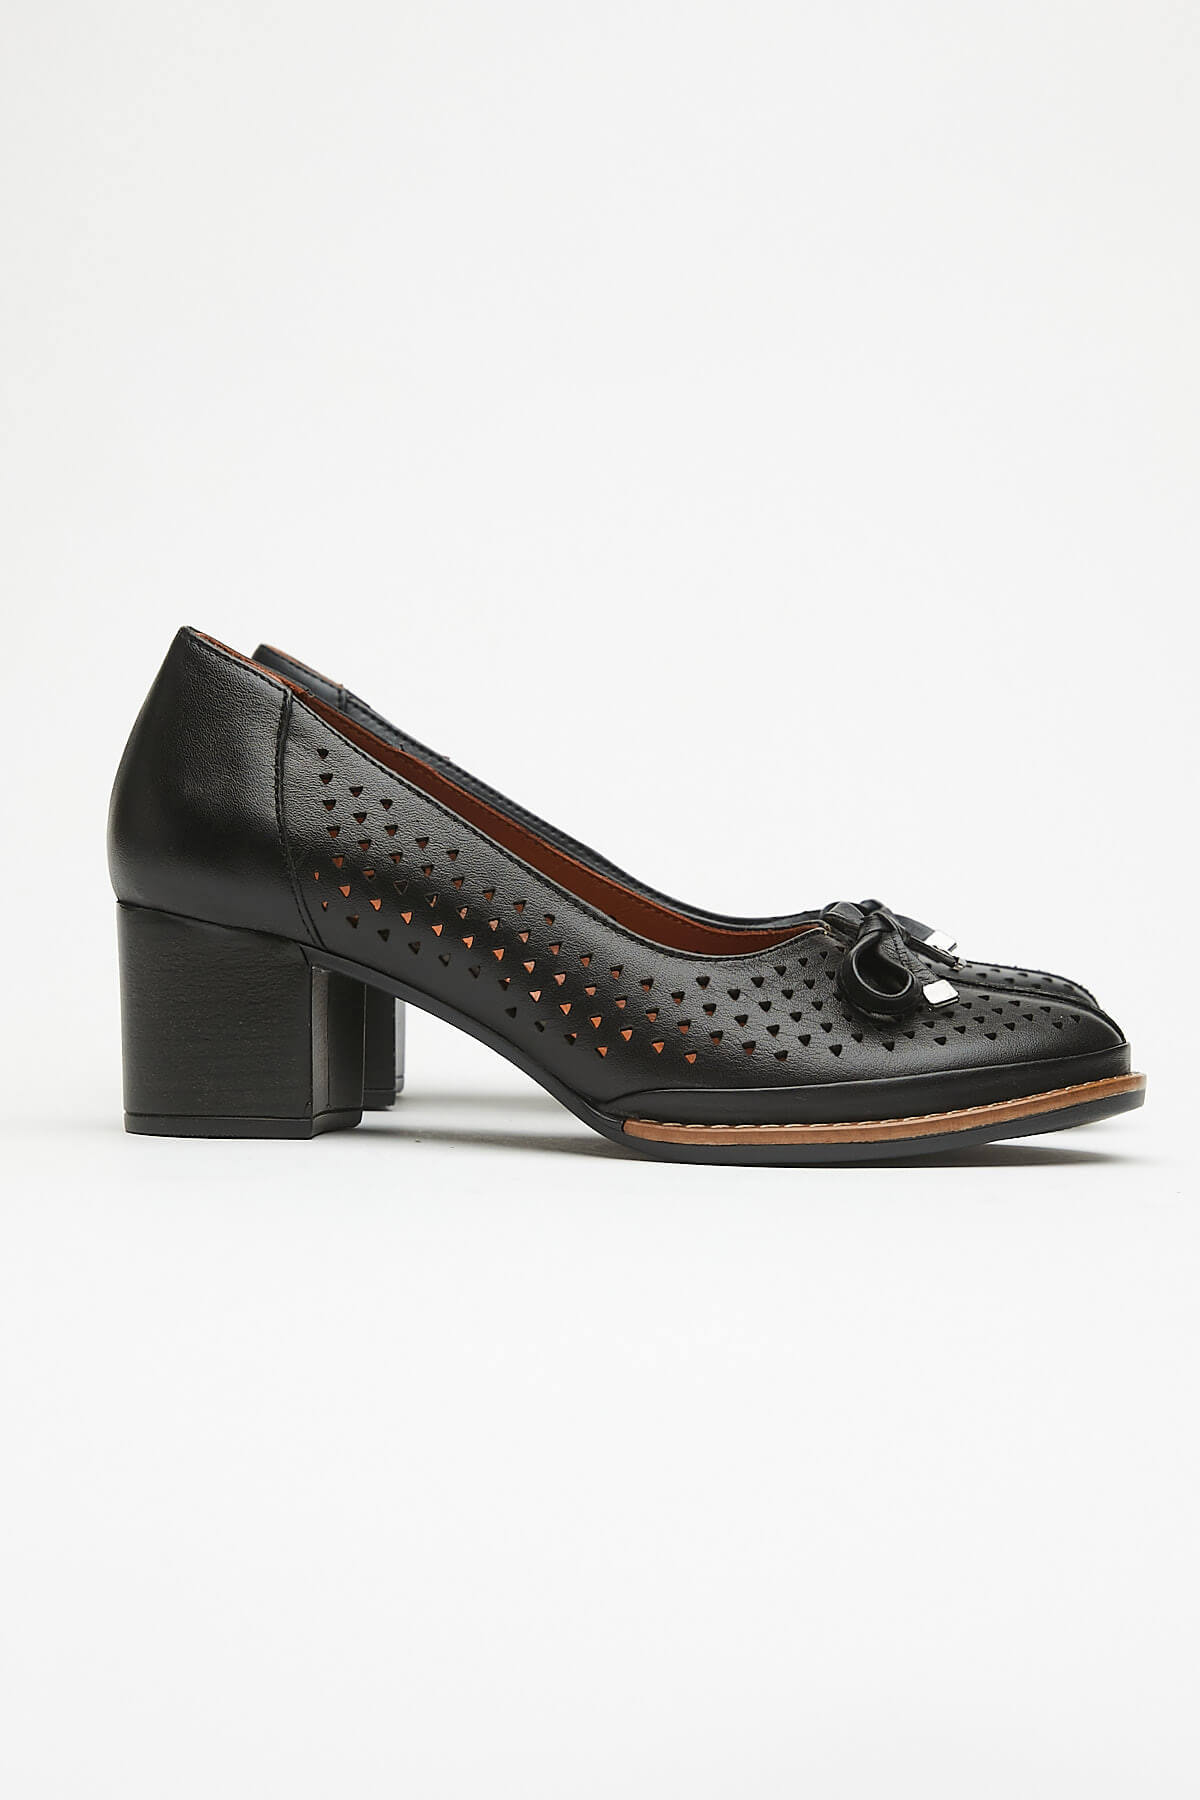 Kadın Topuklu Deri Ayakkabı Siyah 2113301Y